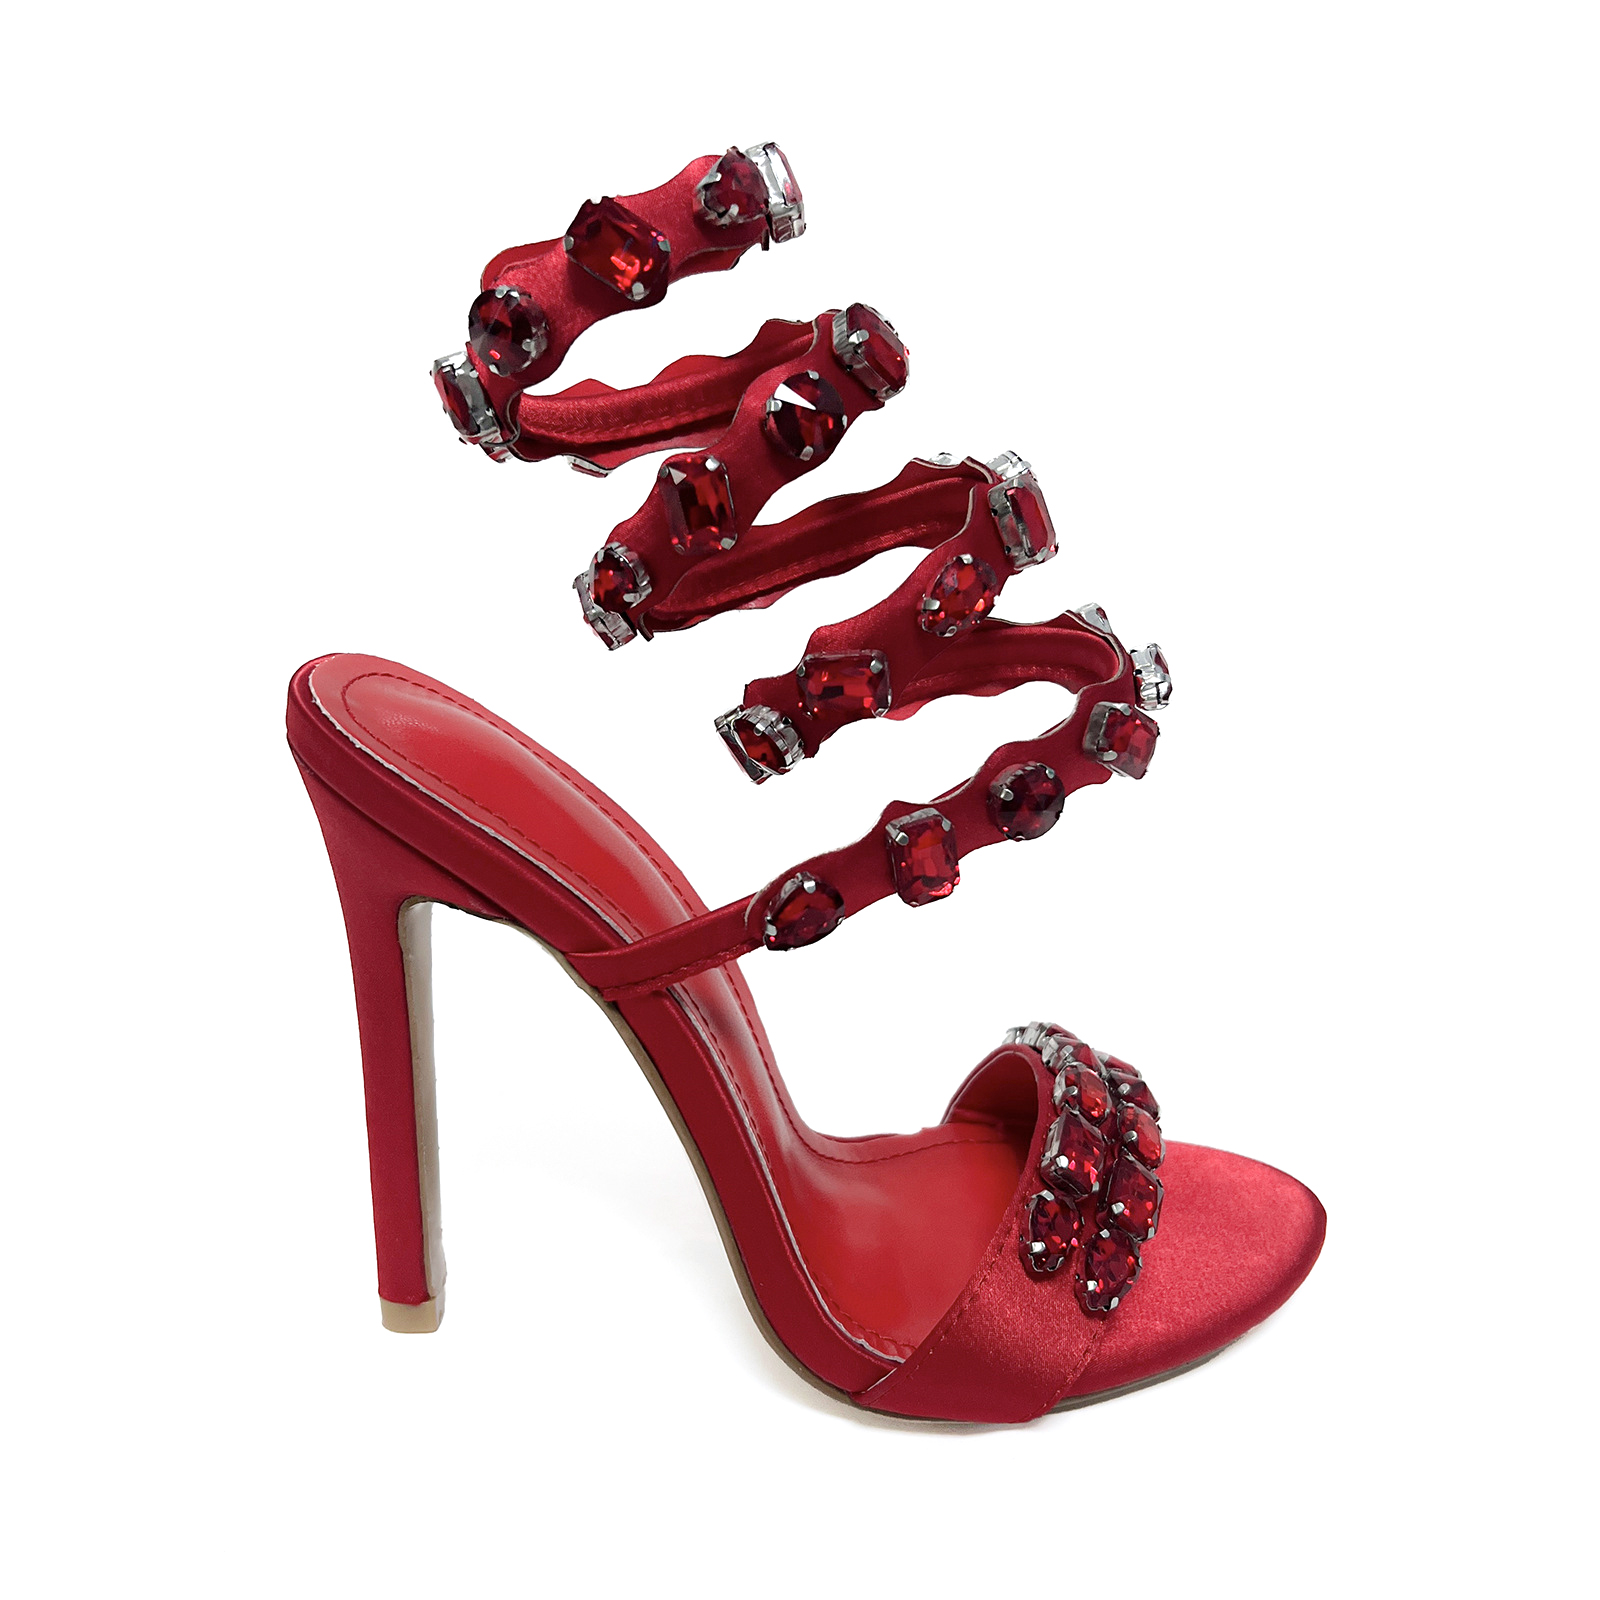 Классические туфли Дизайнерские каблуки Сандалии с украшением из кристаллов праздничная кожаная шпилька на высоком каблуке Вечерние туфли женские на каблуке Роскошные дизайнерские ботильоны обувь